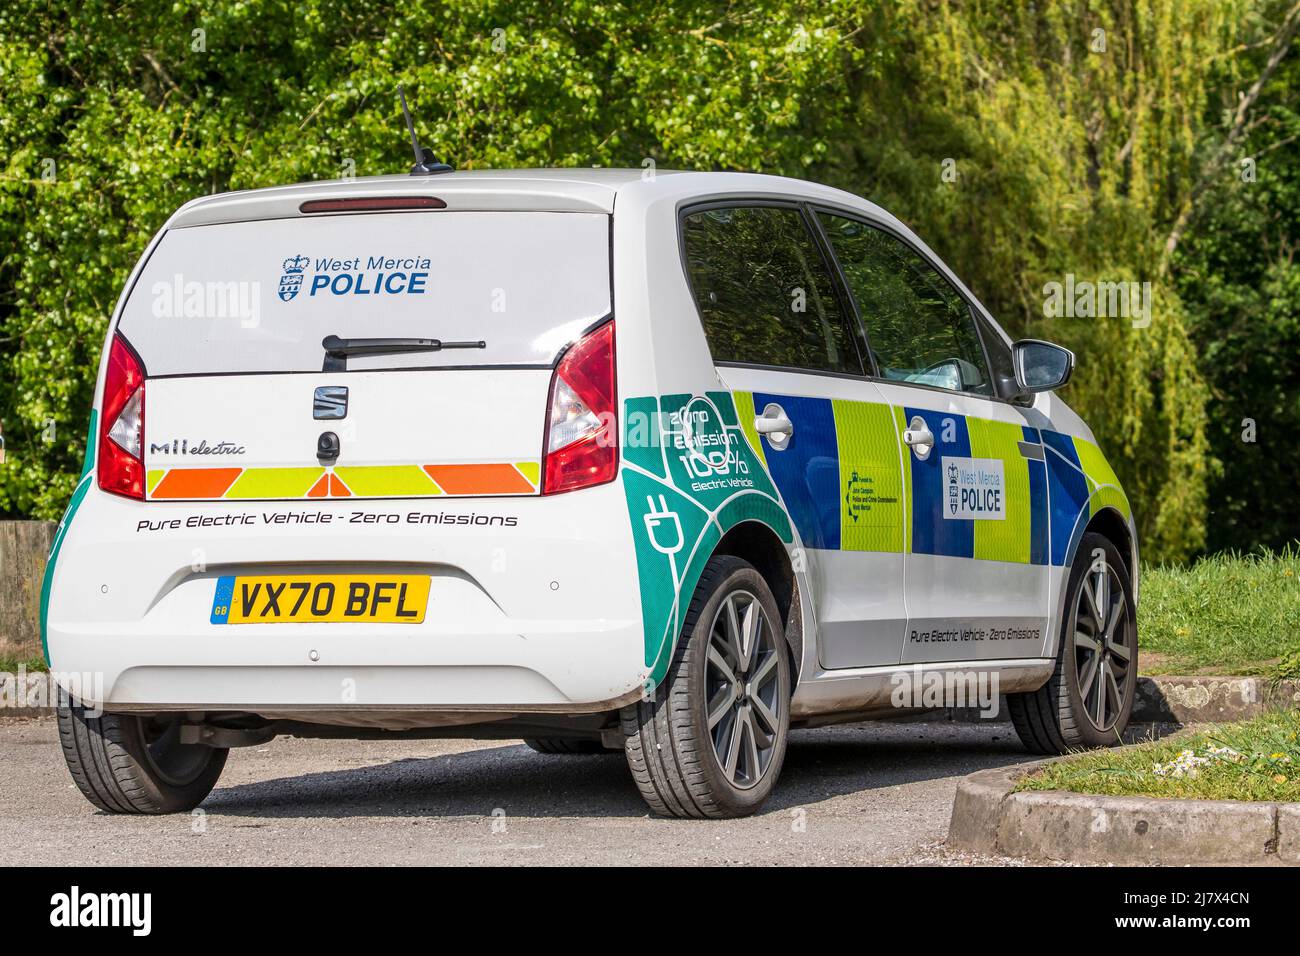 Vue arrière d'une voiture de police électrique à émission nulle de la police de West Mercia, Royaume-Uni, garée dans un parc public. Véhicules de police respectueux de l'environnement. Banque D'Images